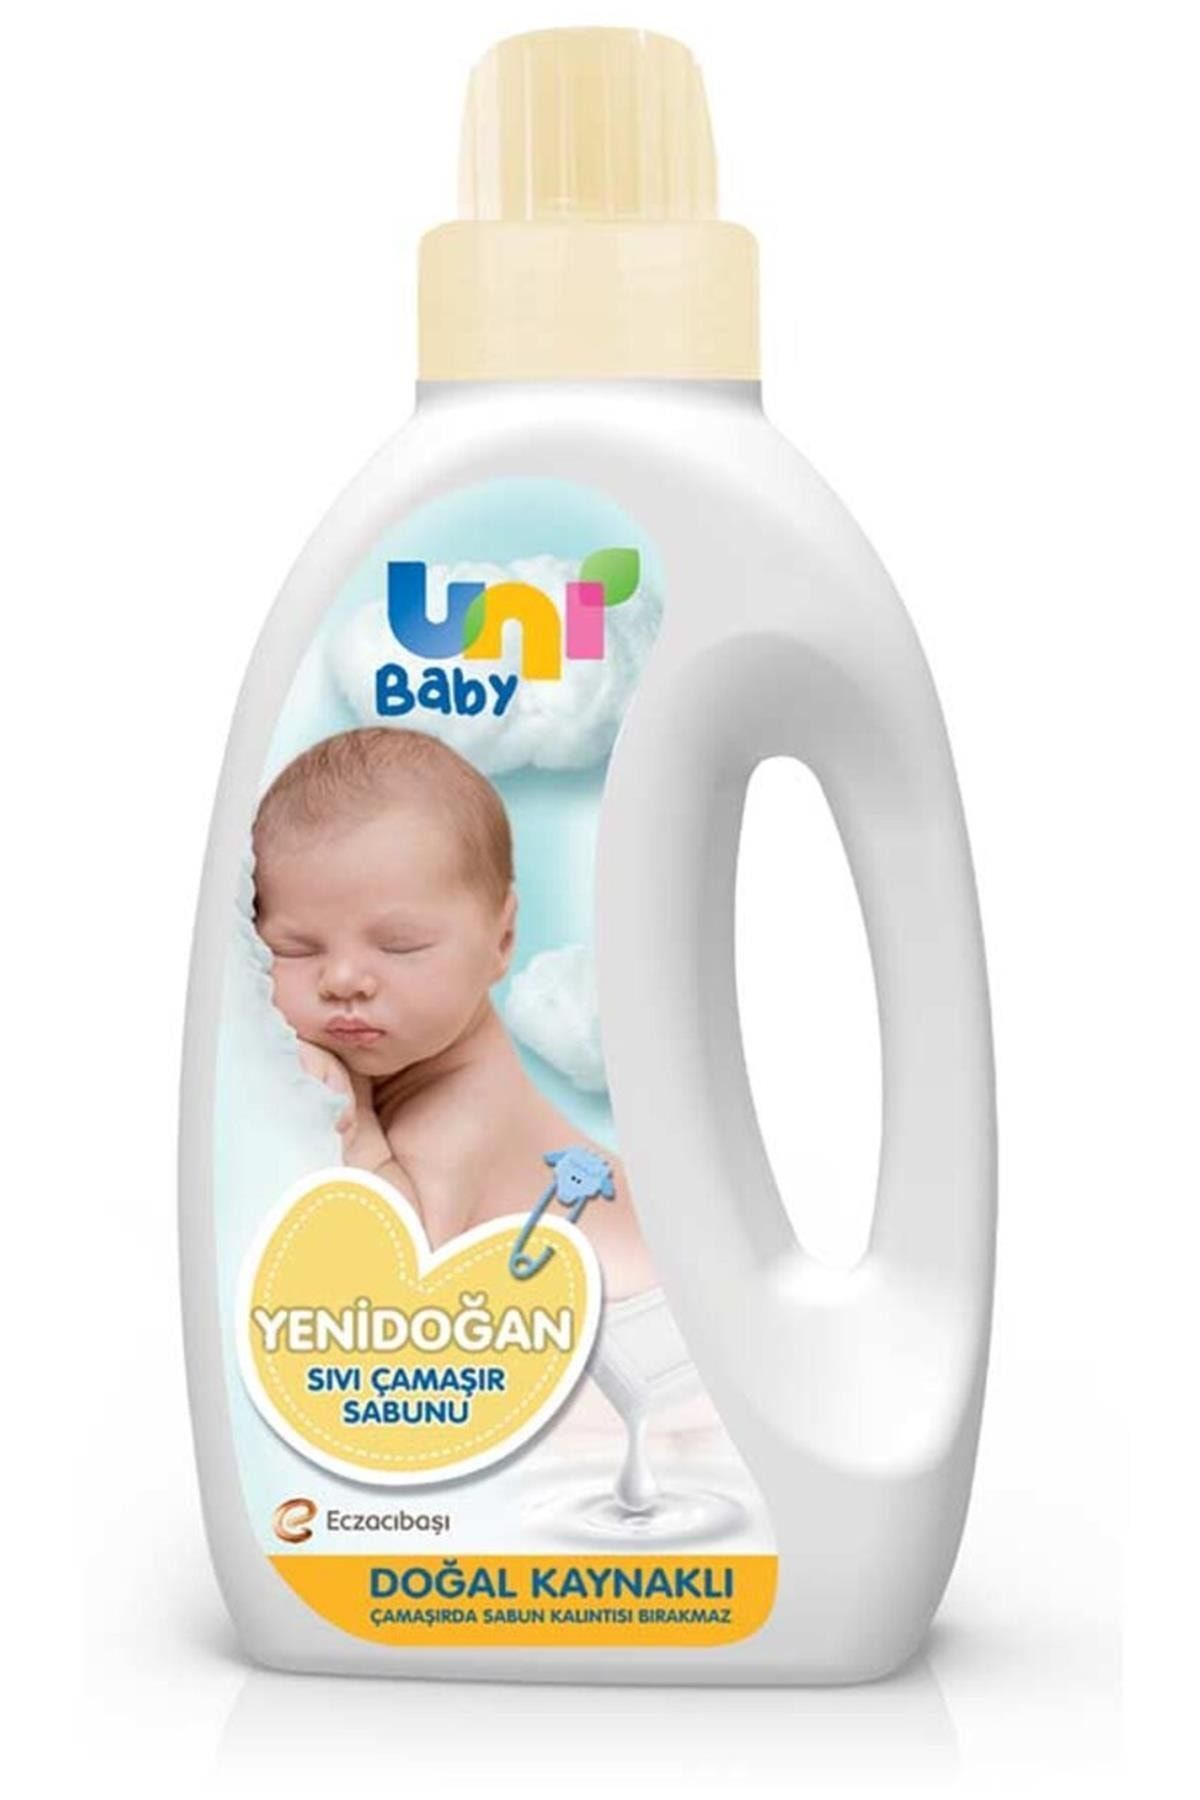 Uni Baby Marka: Yenidoğan Sıvı Çamaşır Sabunu 1500 Ml Kategori: Bebek Deterjanı